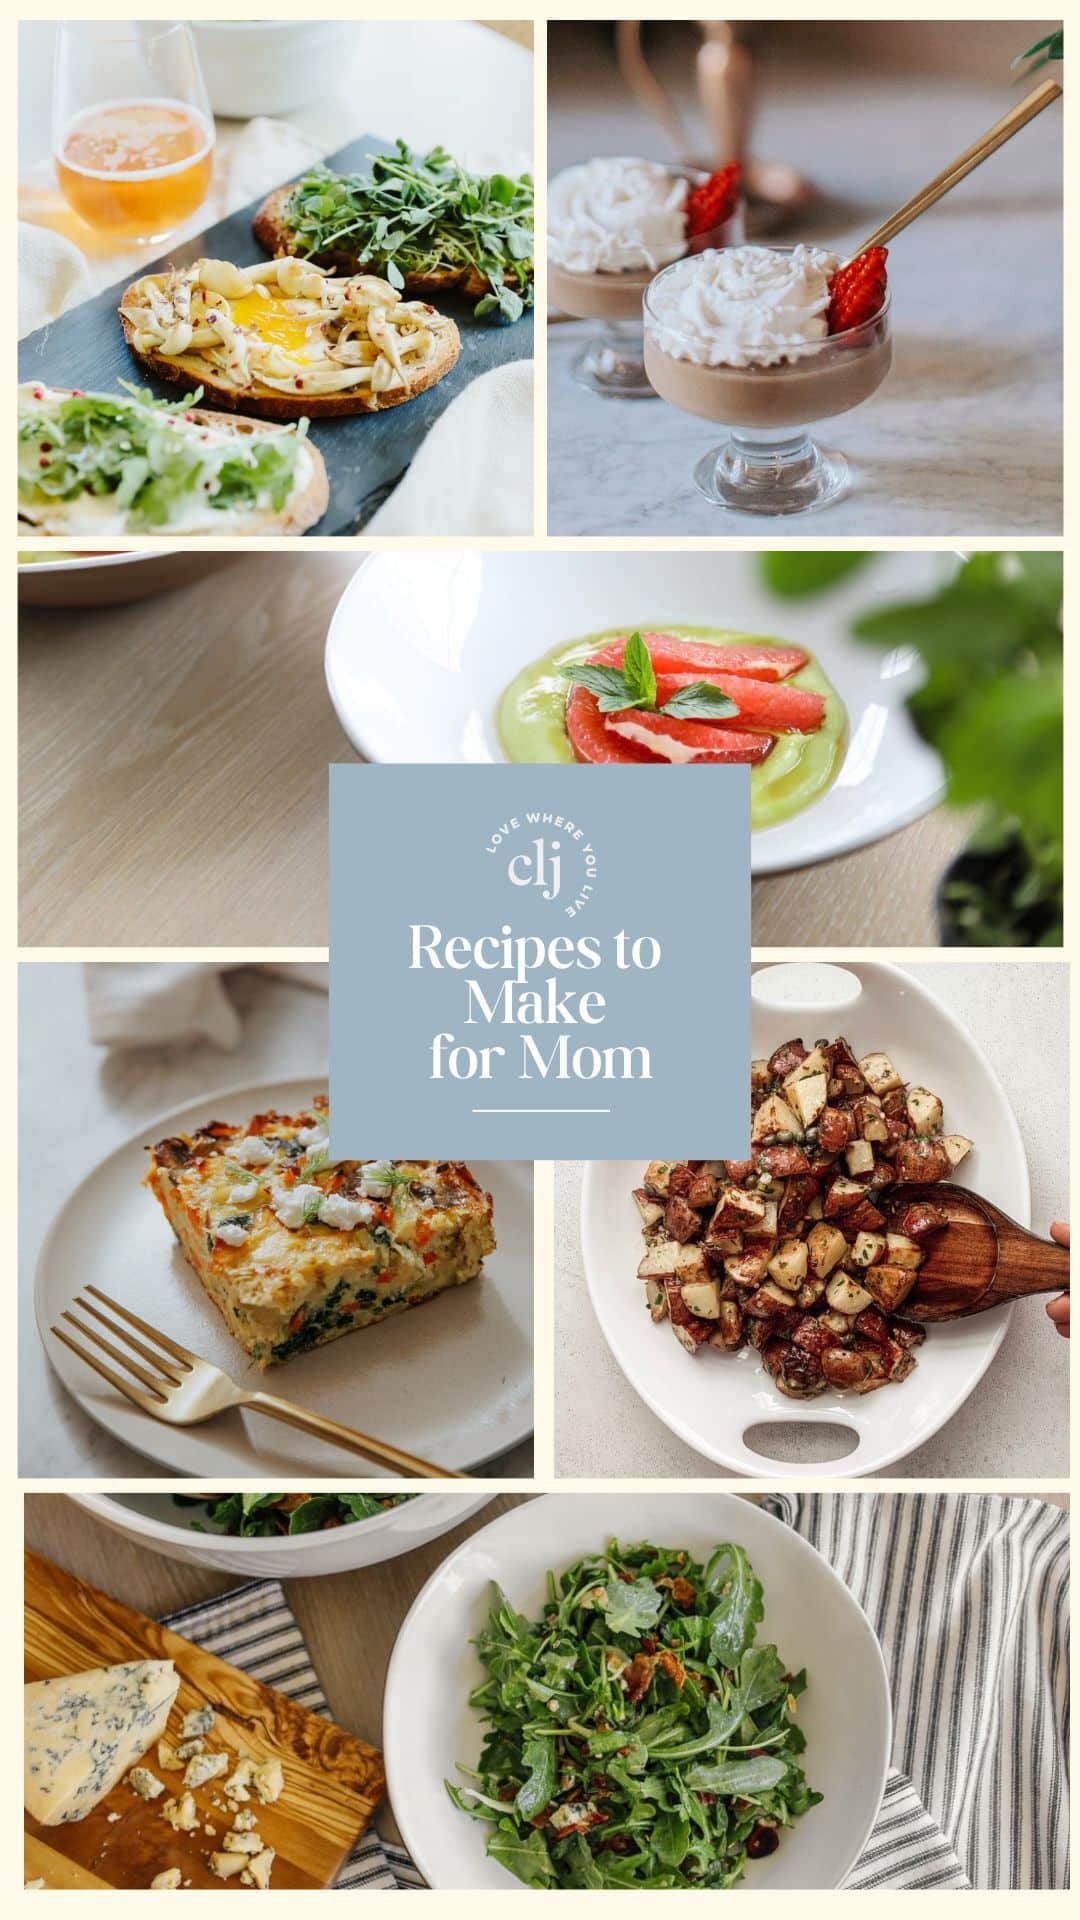 Chris Cooks | Recipes to Make for Mom